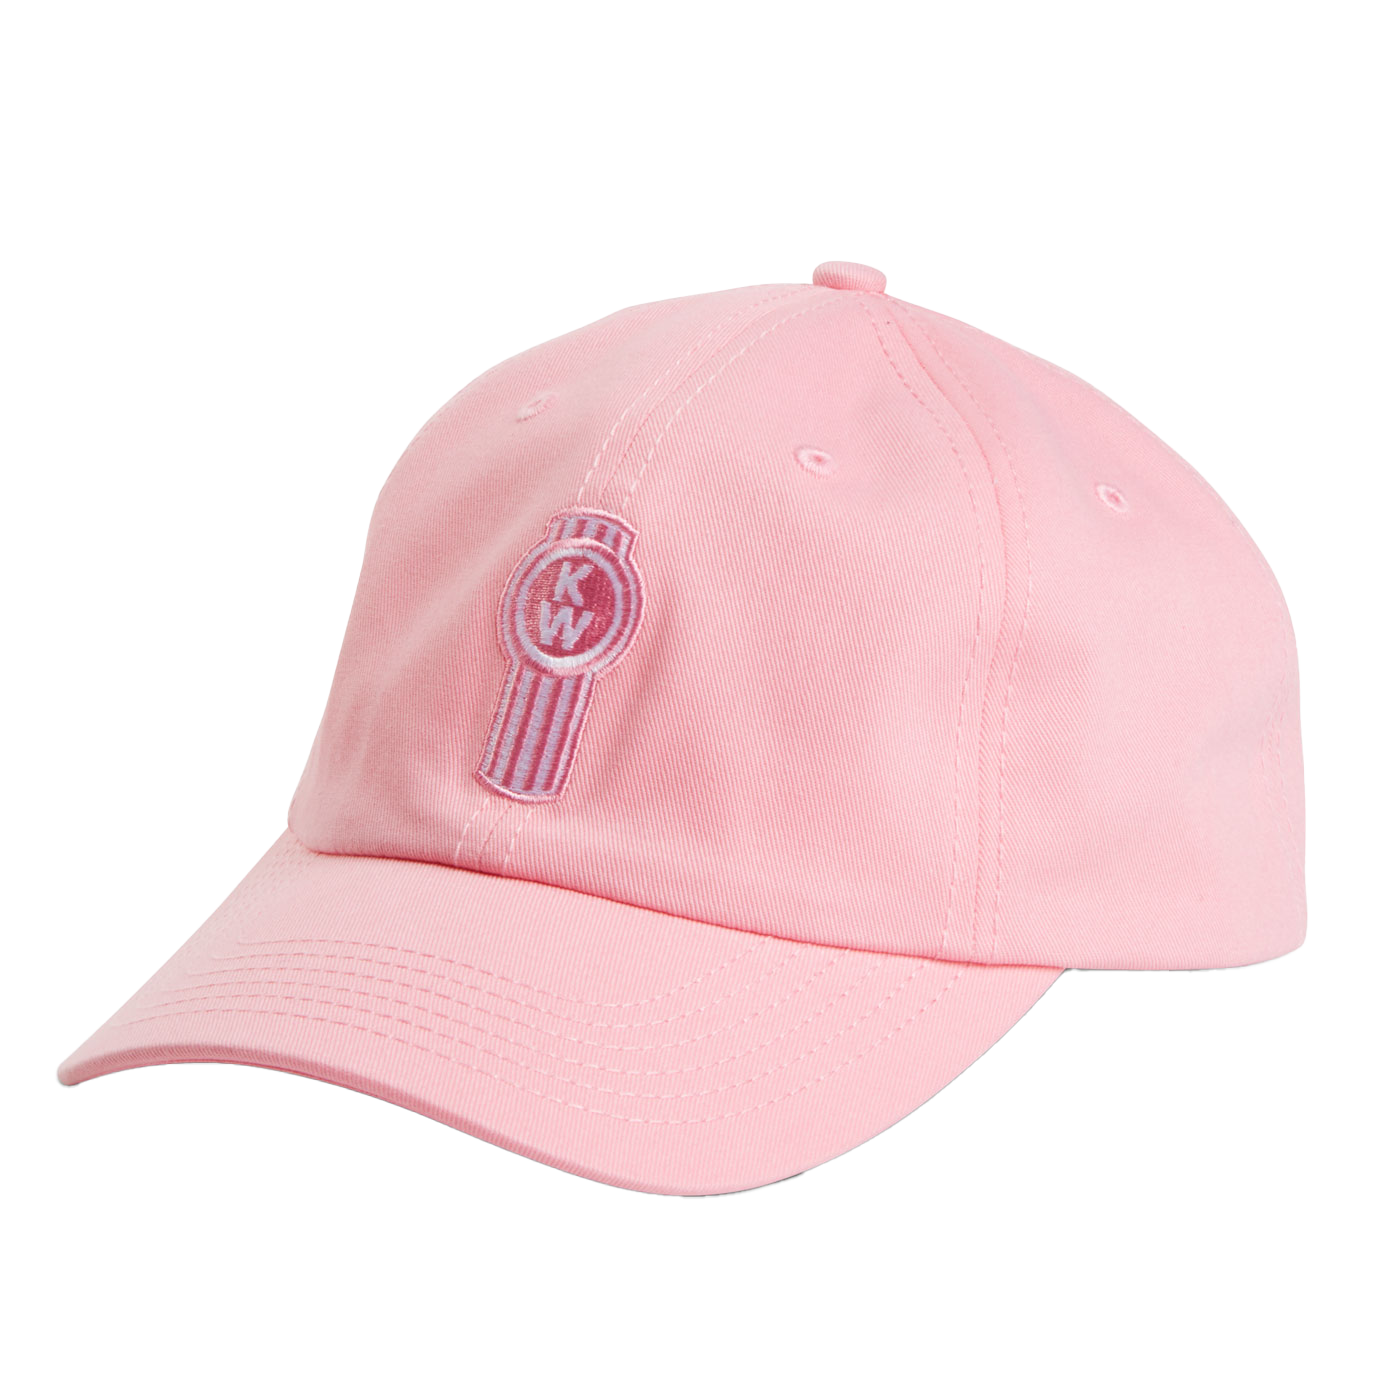 Ladies Pink Twill Cap